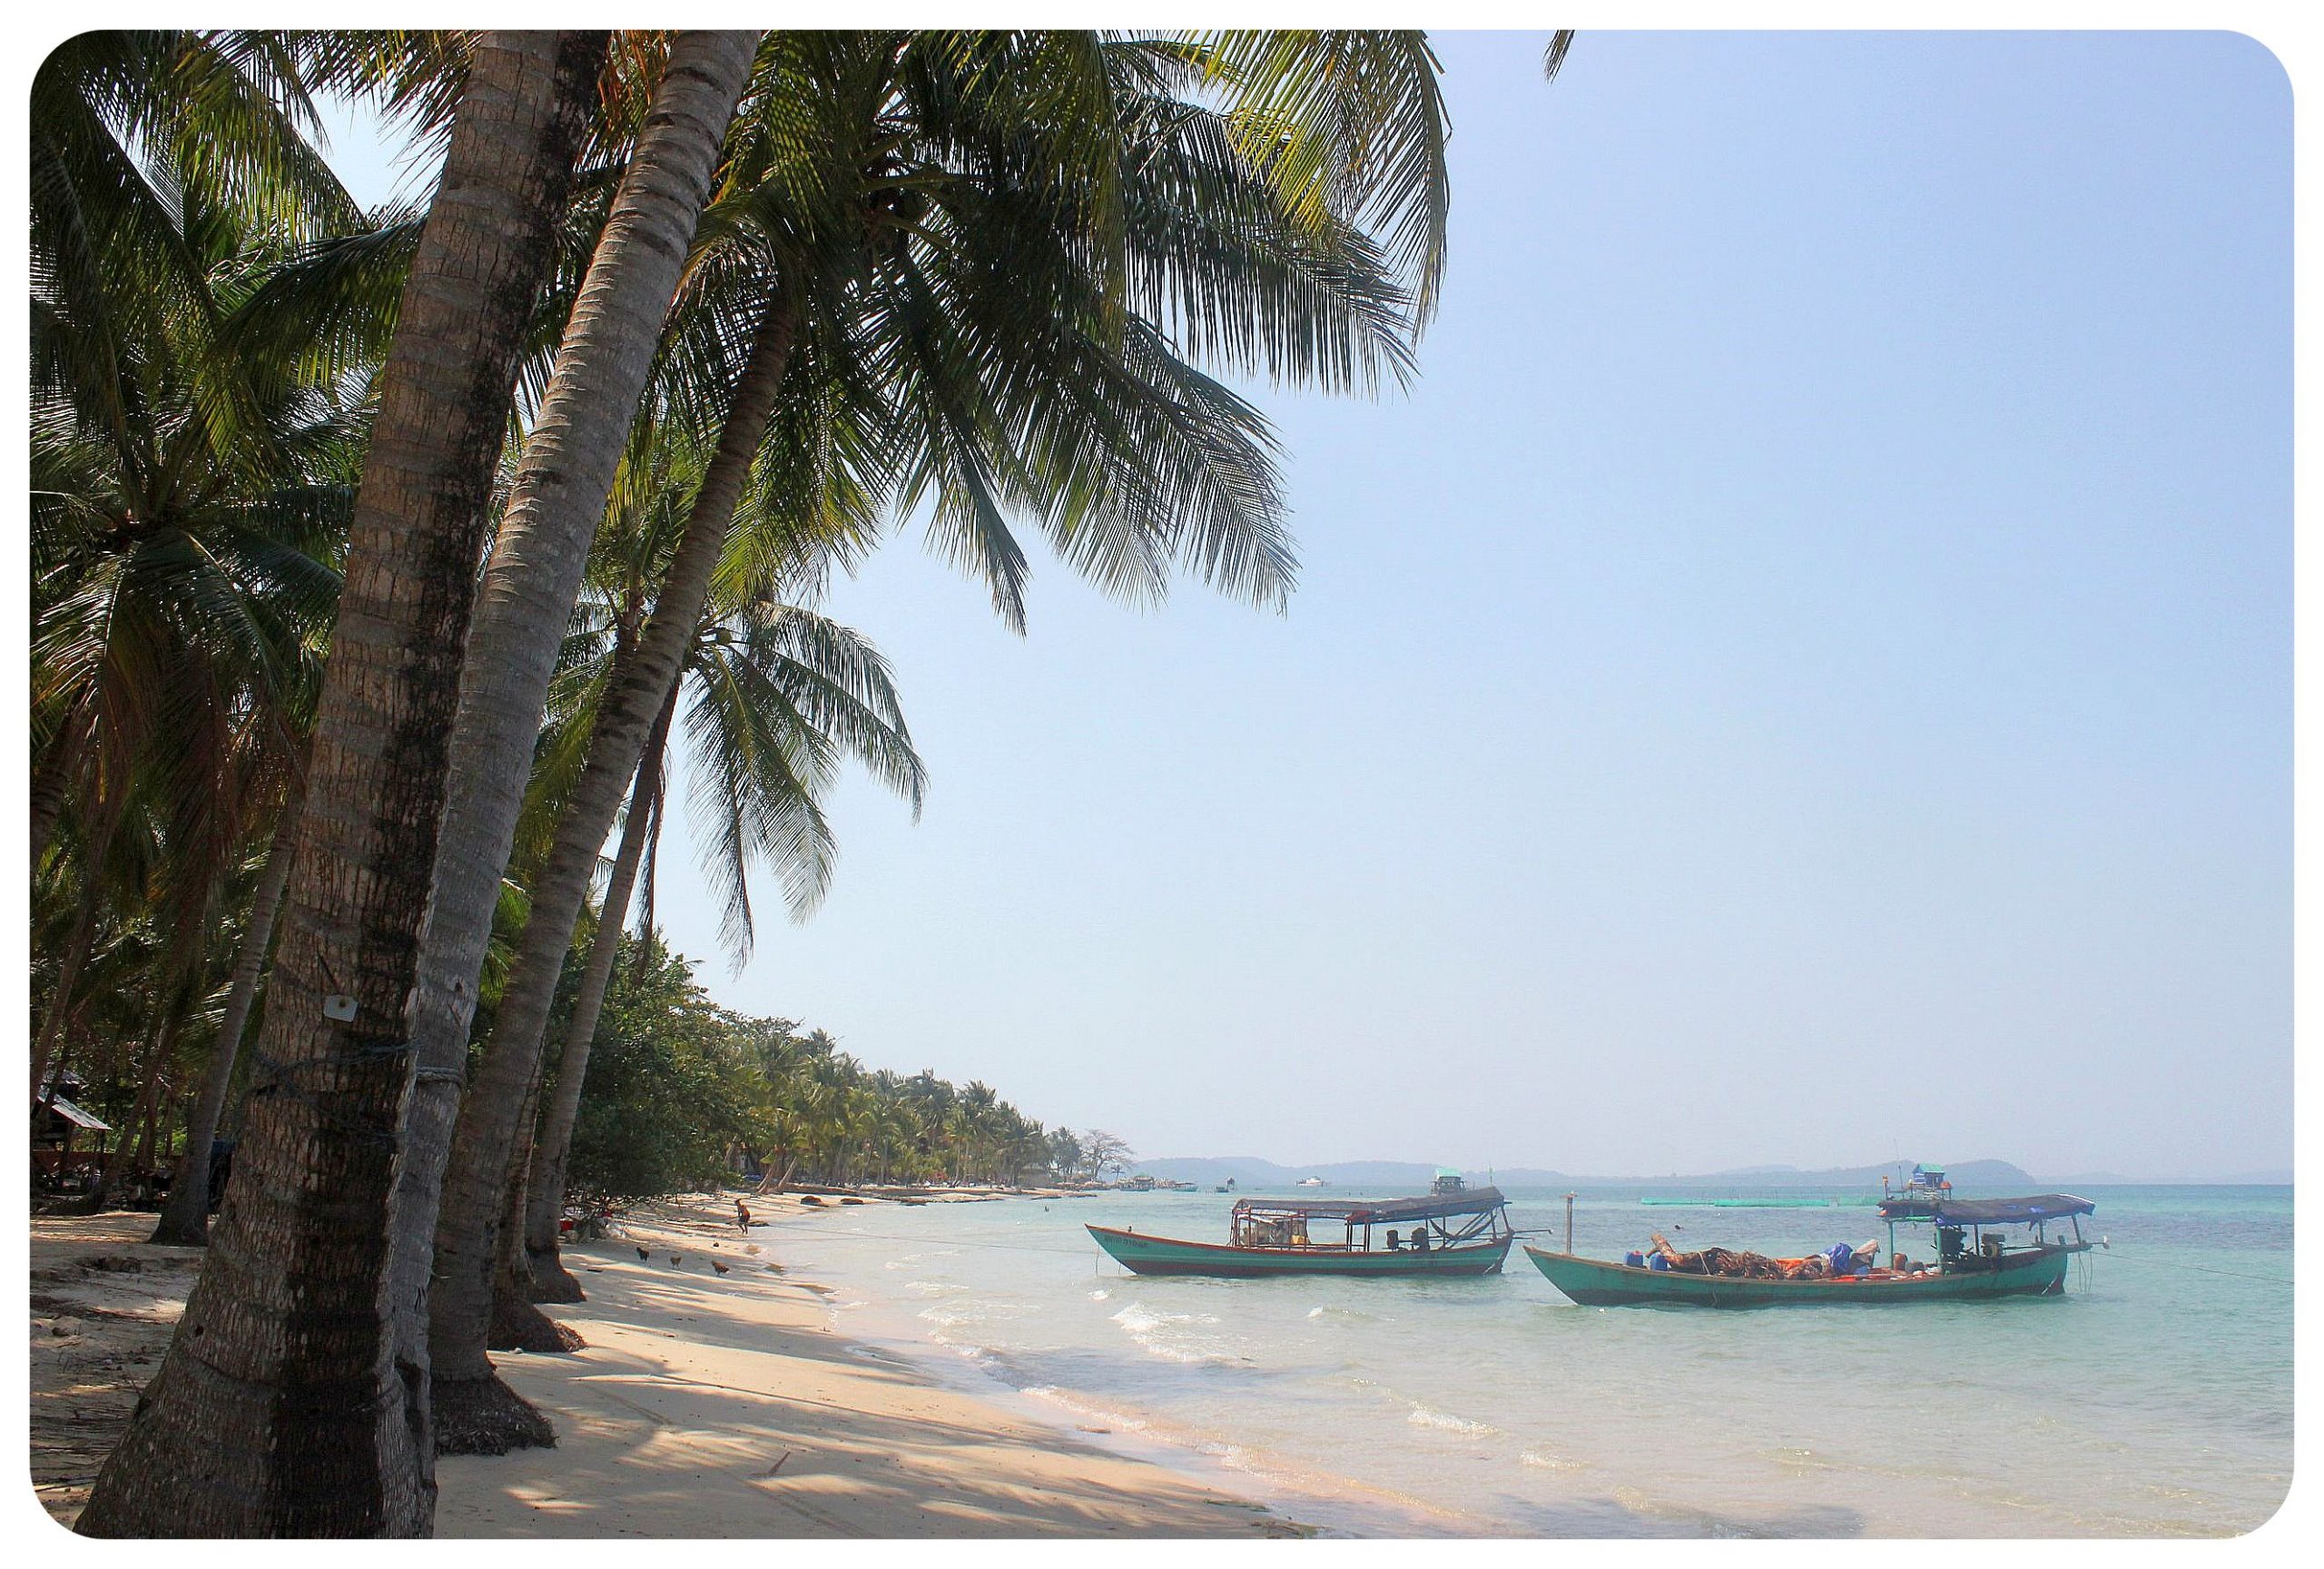 Phu Quoc Island: Vietnam’s Phuket?